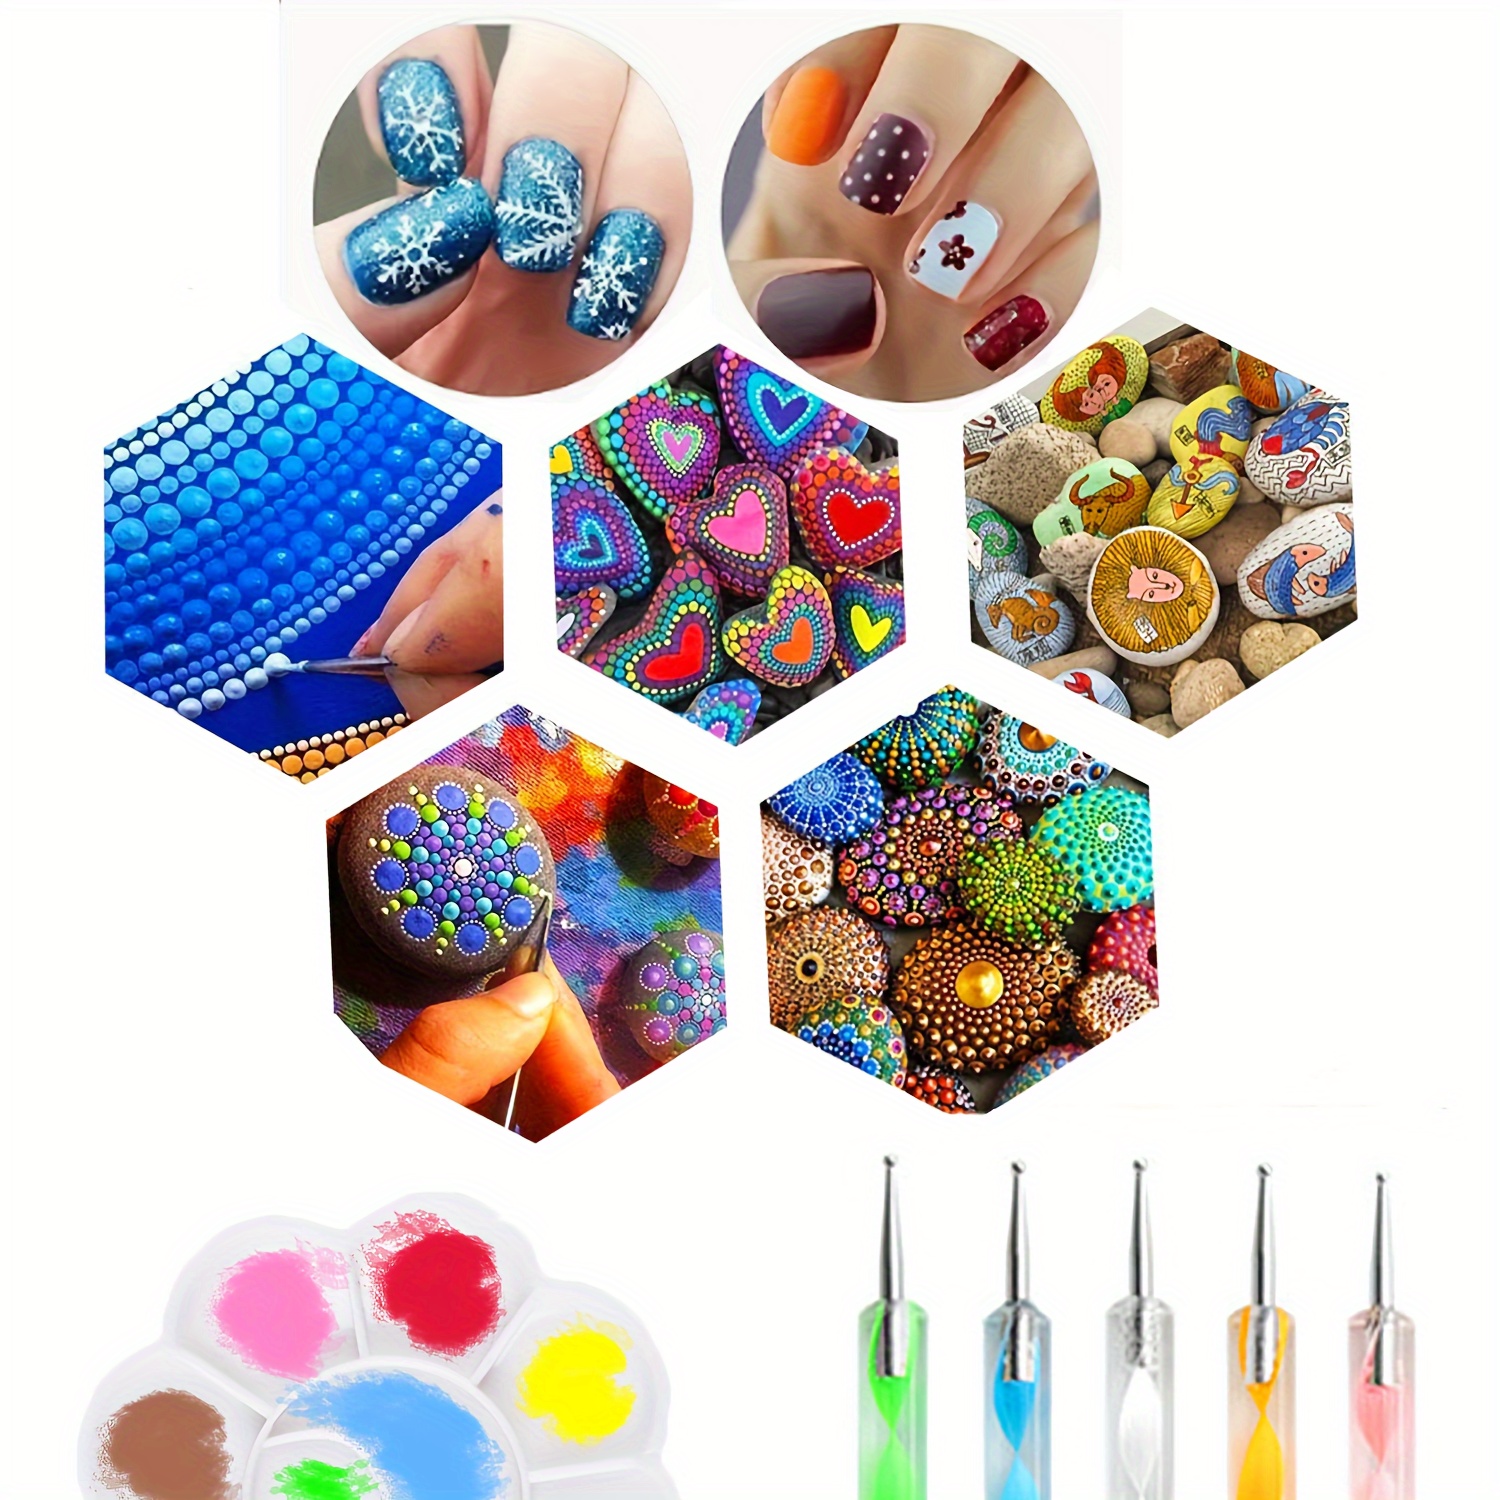 Kit mandala dots in acrylic colors and dotting tools